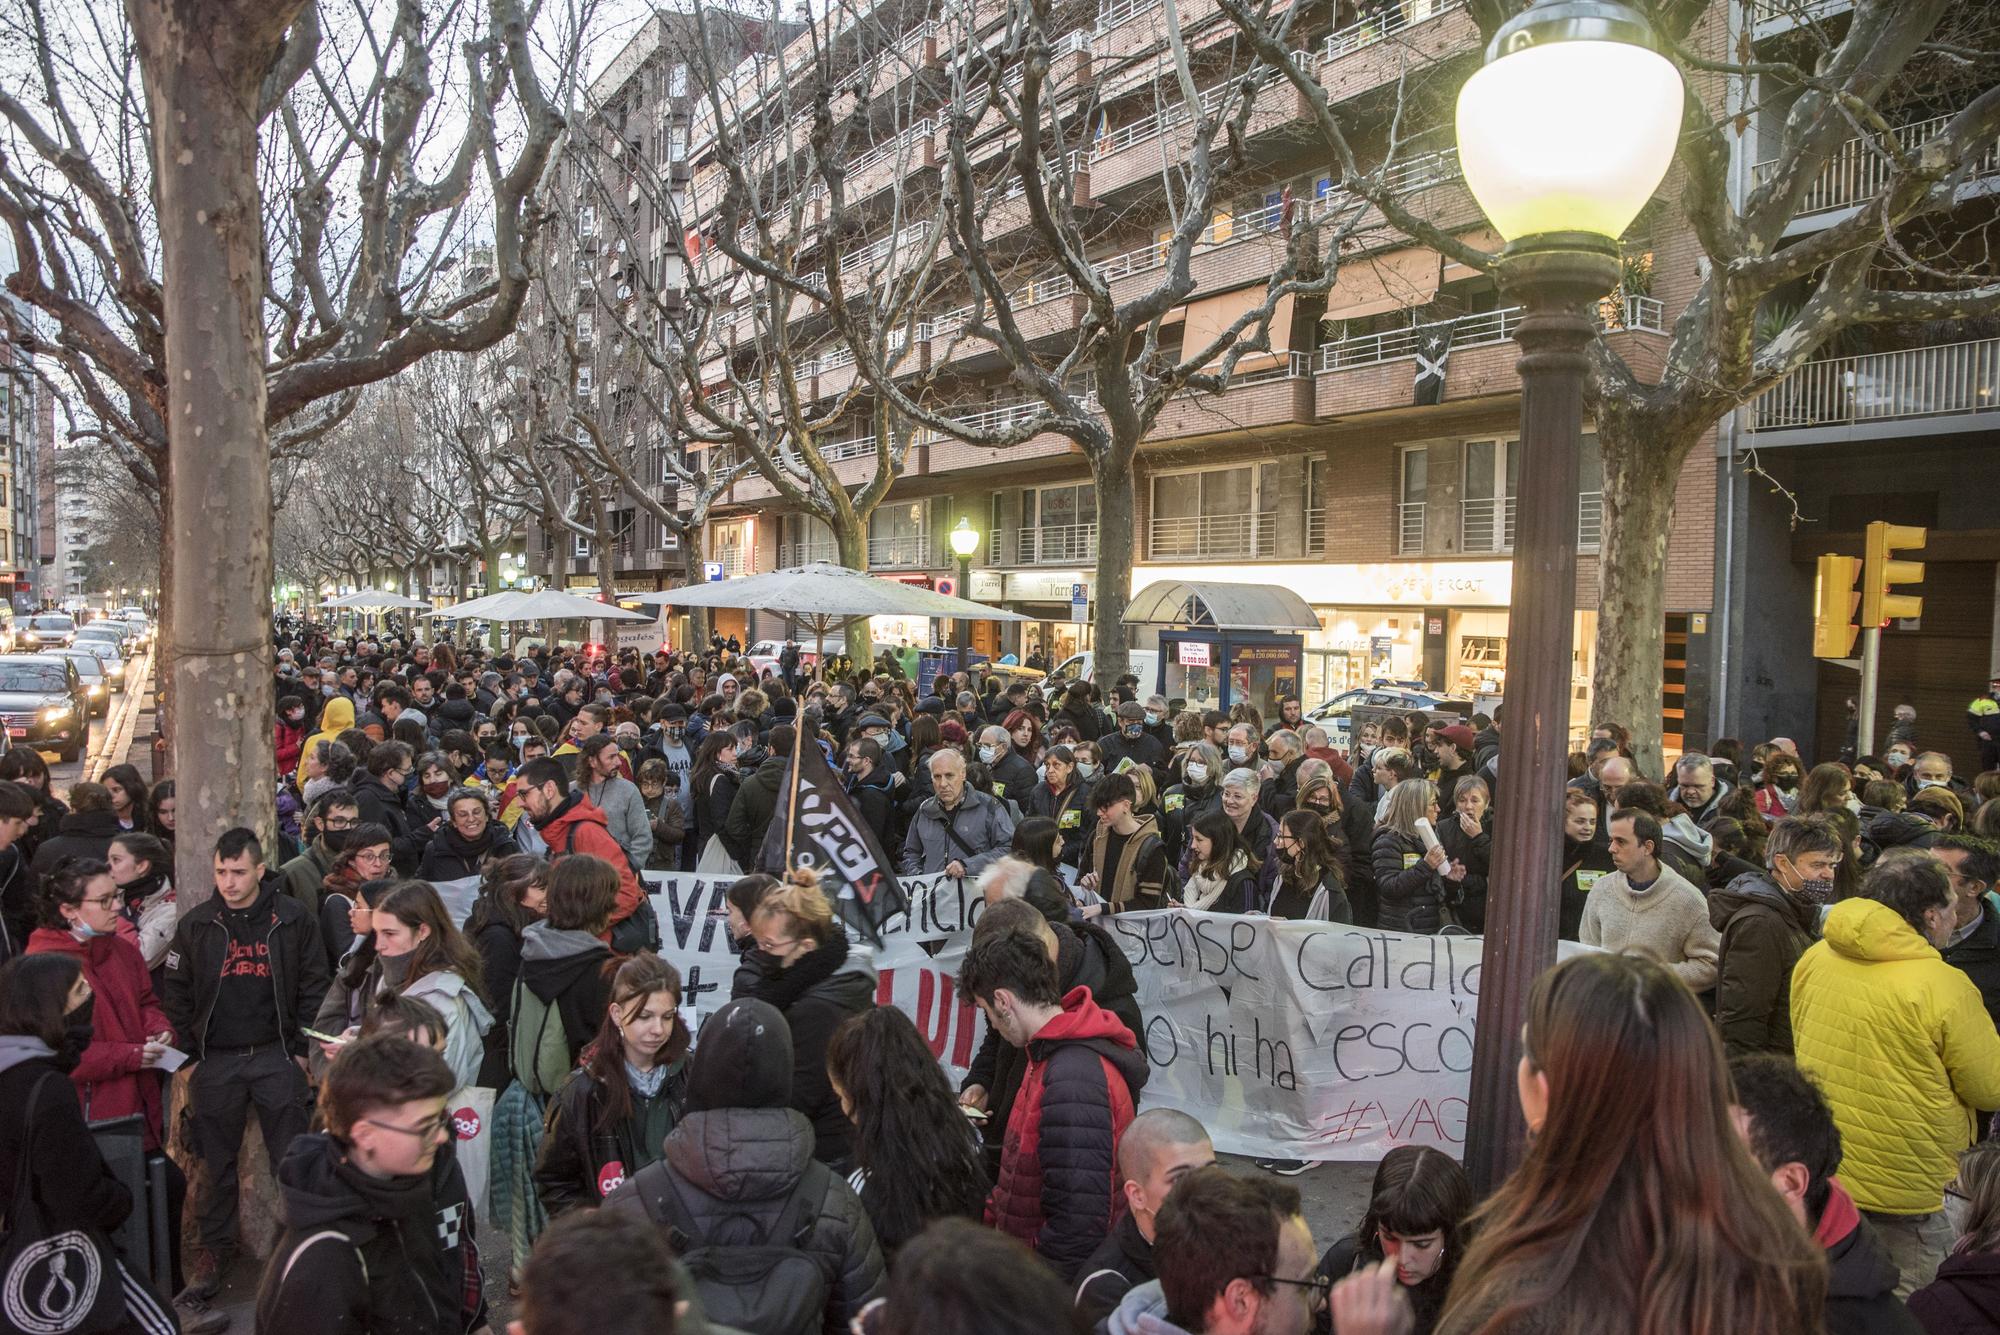 Manifestació a Manresa en defensa de l'escola en català